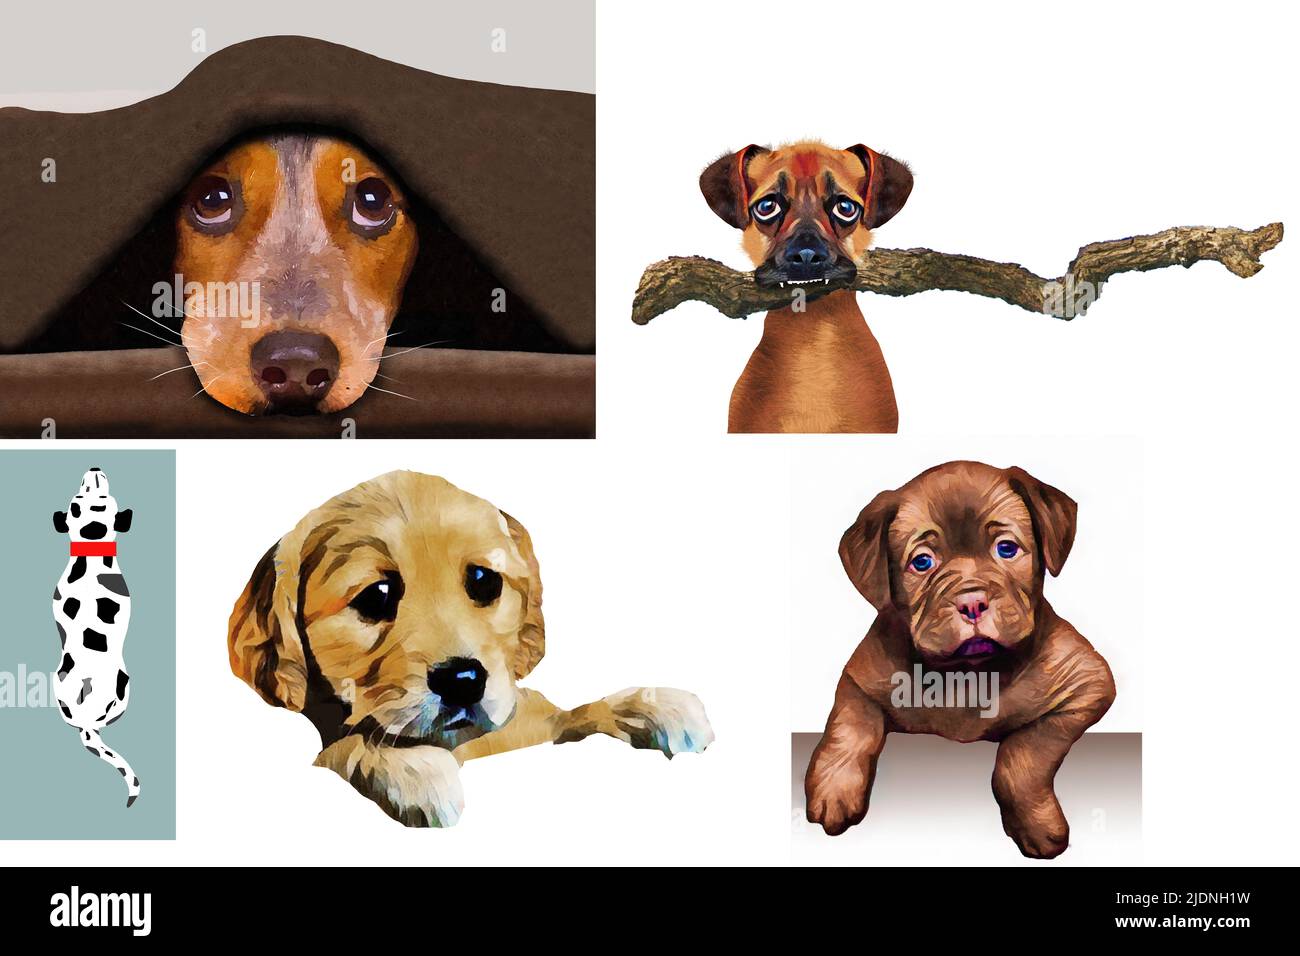 Los perros se ven en ilustraciones 3-d que pueden ser usadas para un recurso gráfico. Foto de stock